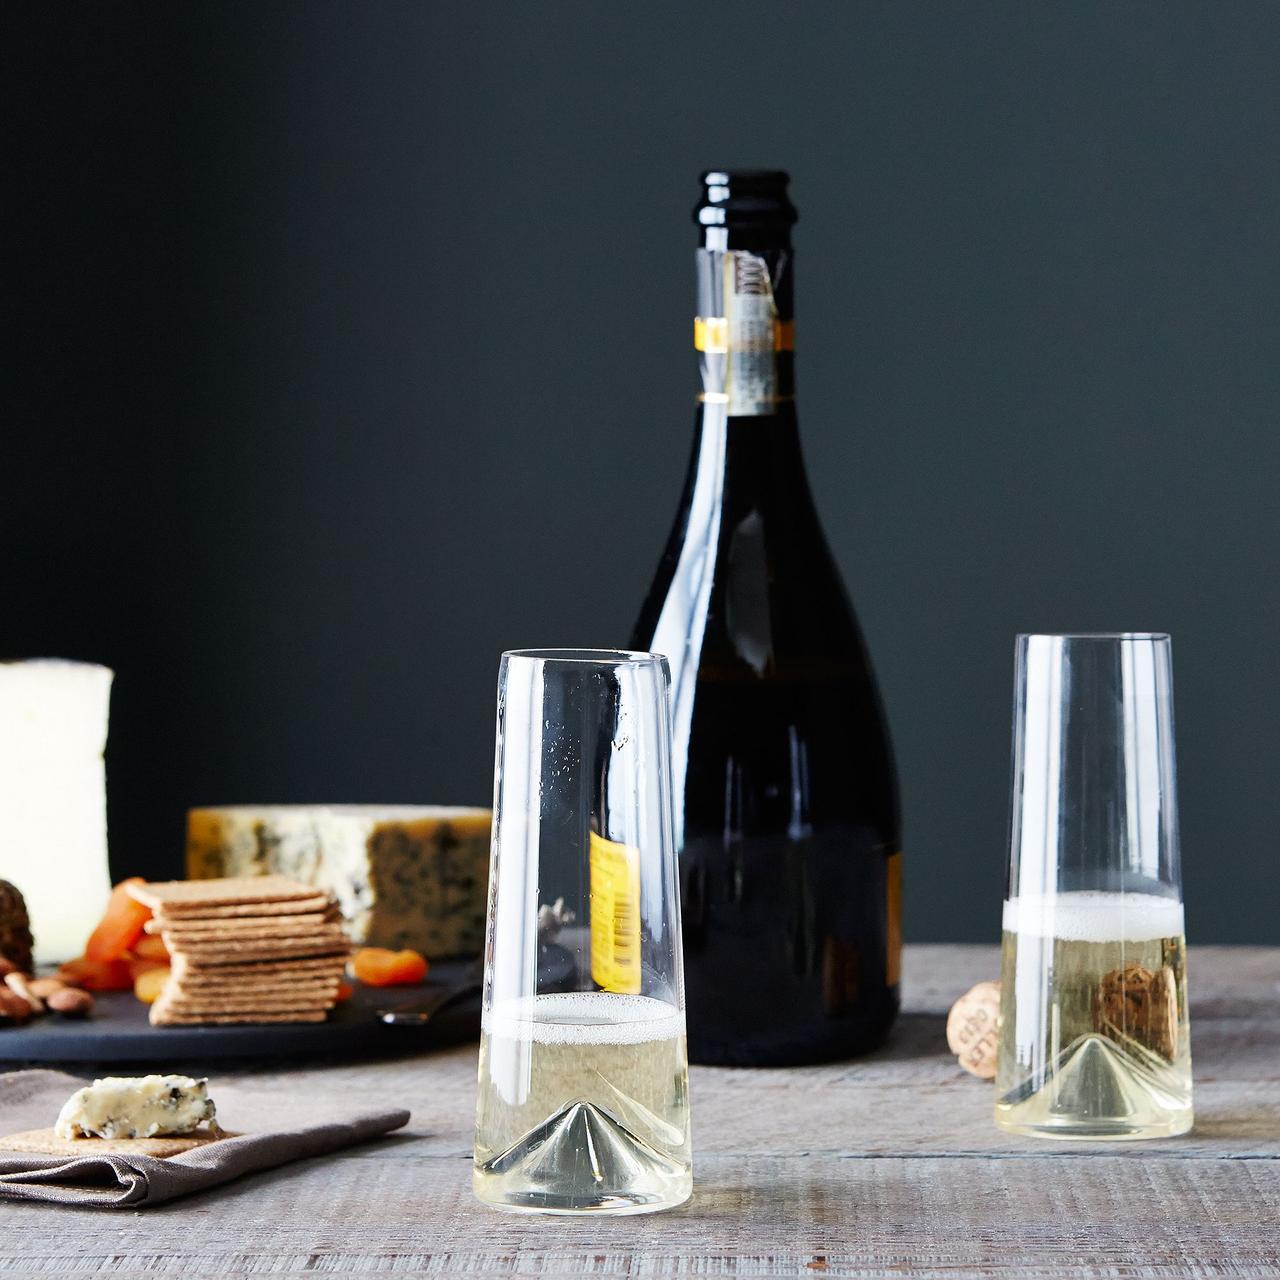 Сервировка стола с сырной доской, бутылкой шампанского и двумя бокалами для шампанского без ножки